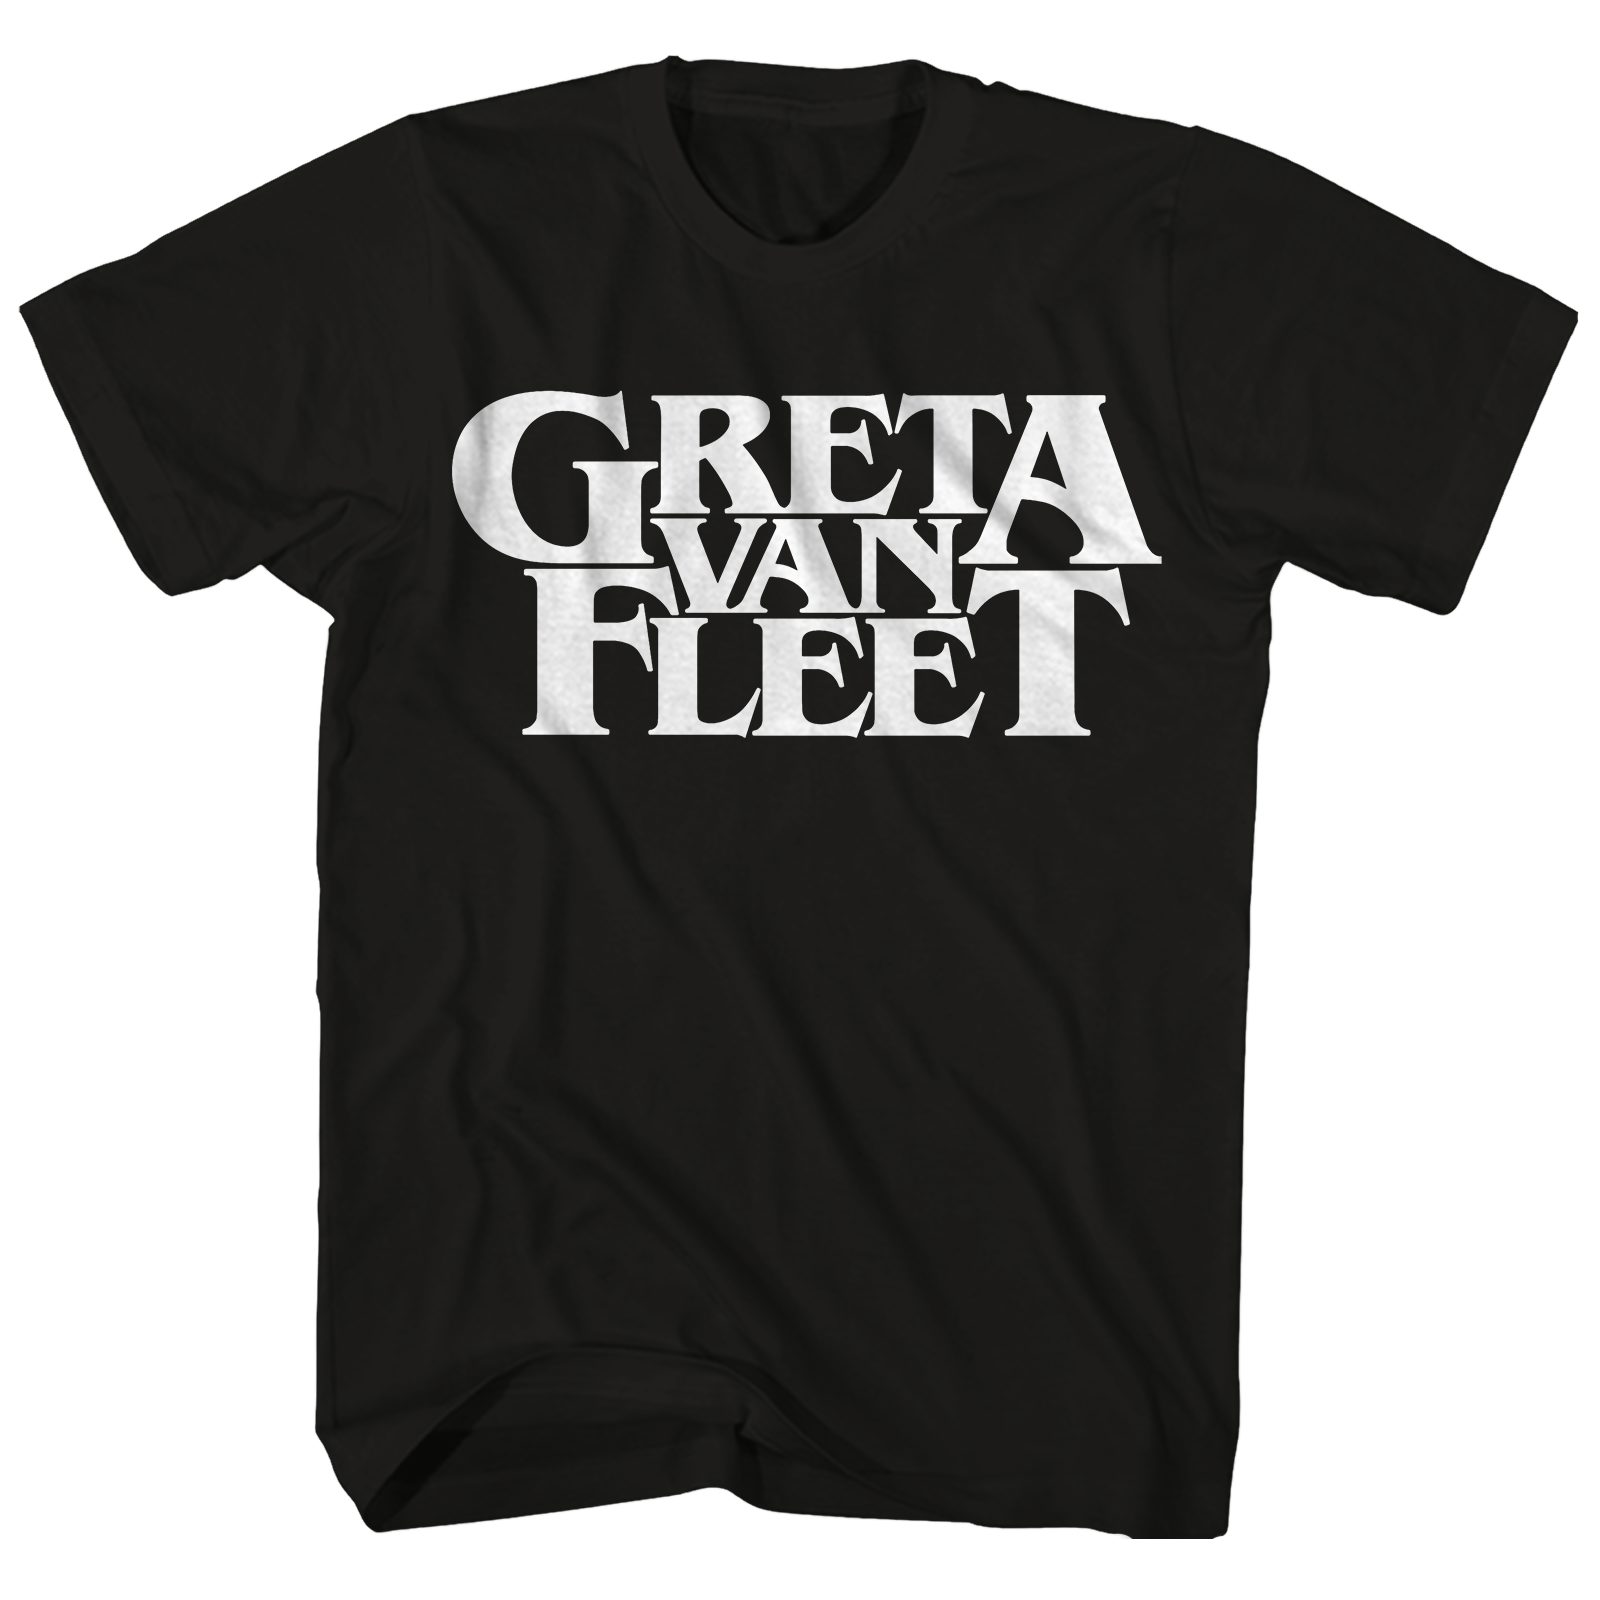 greta van fleet tee shirts